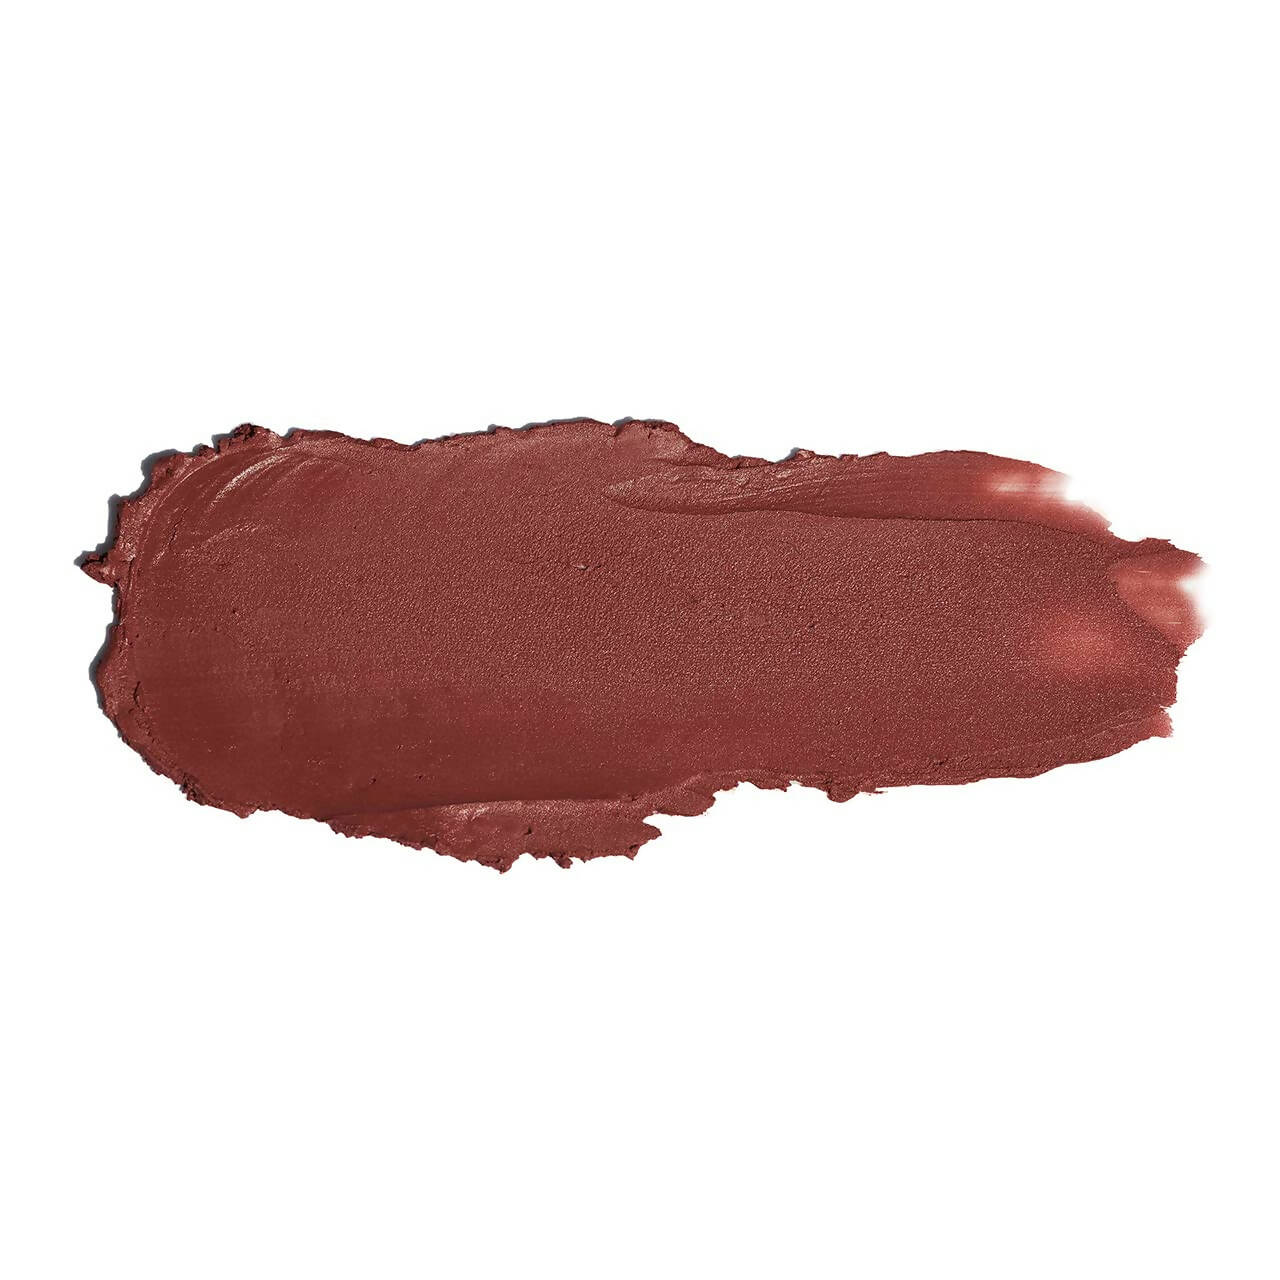 FAE Beauty Rose Brown Modern Matte Lipstick - Shade Awkward - Distacart